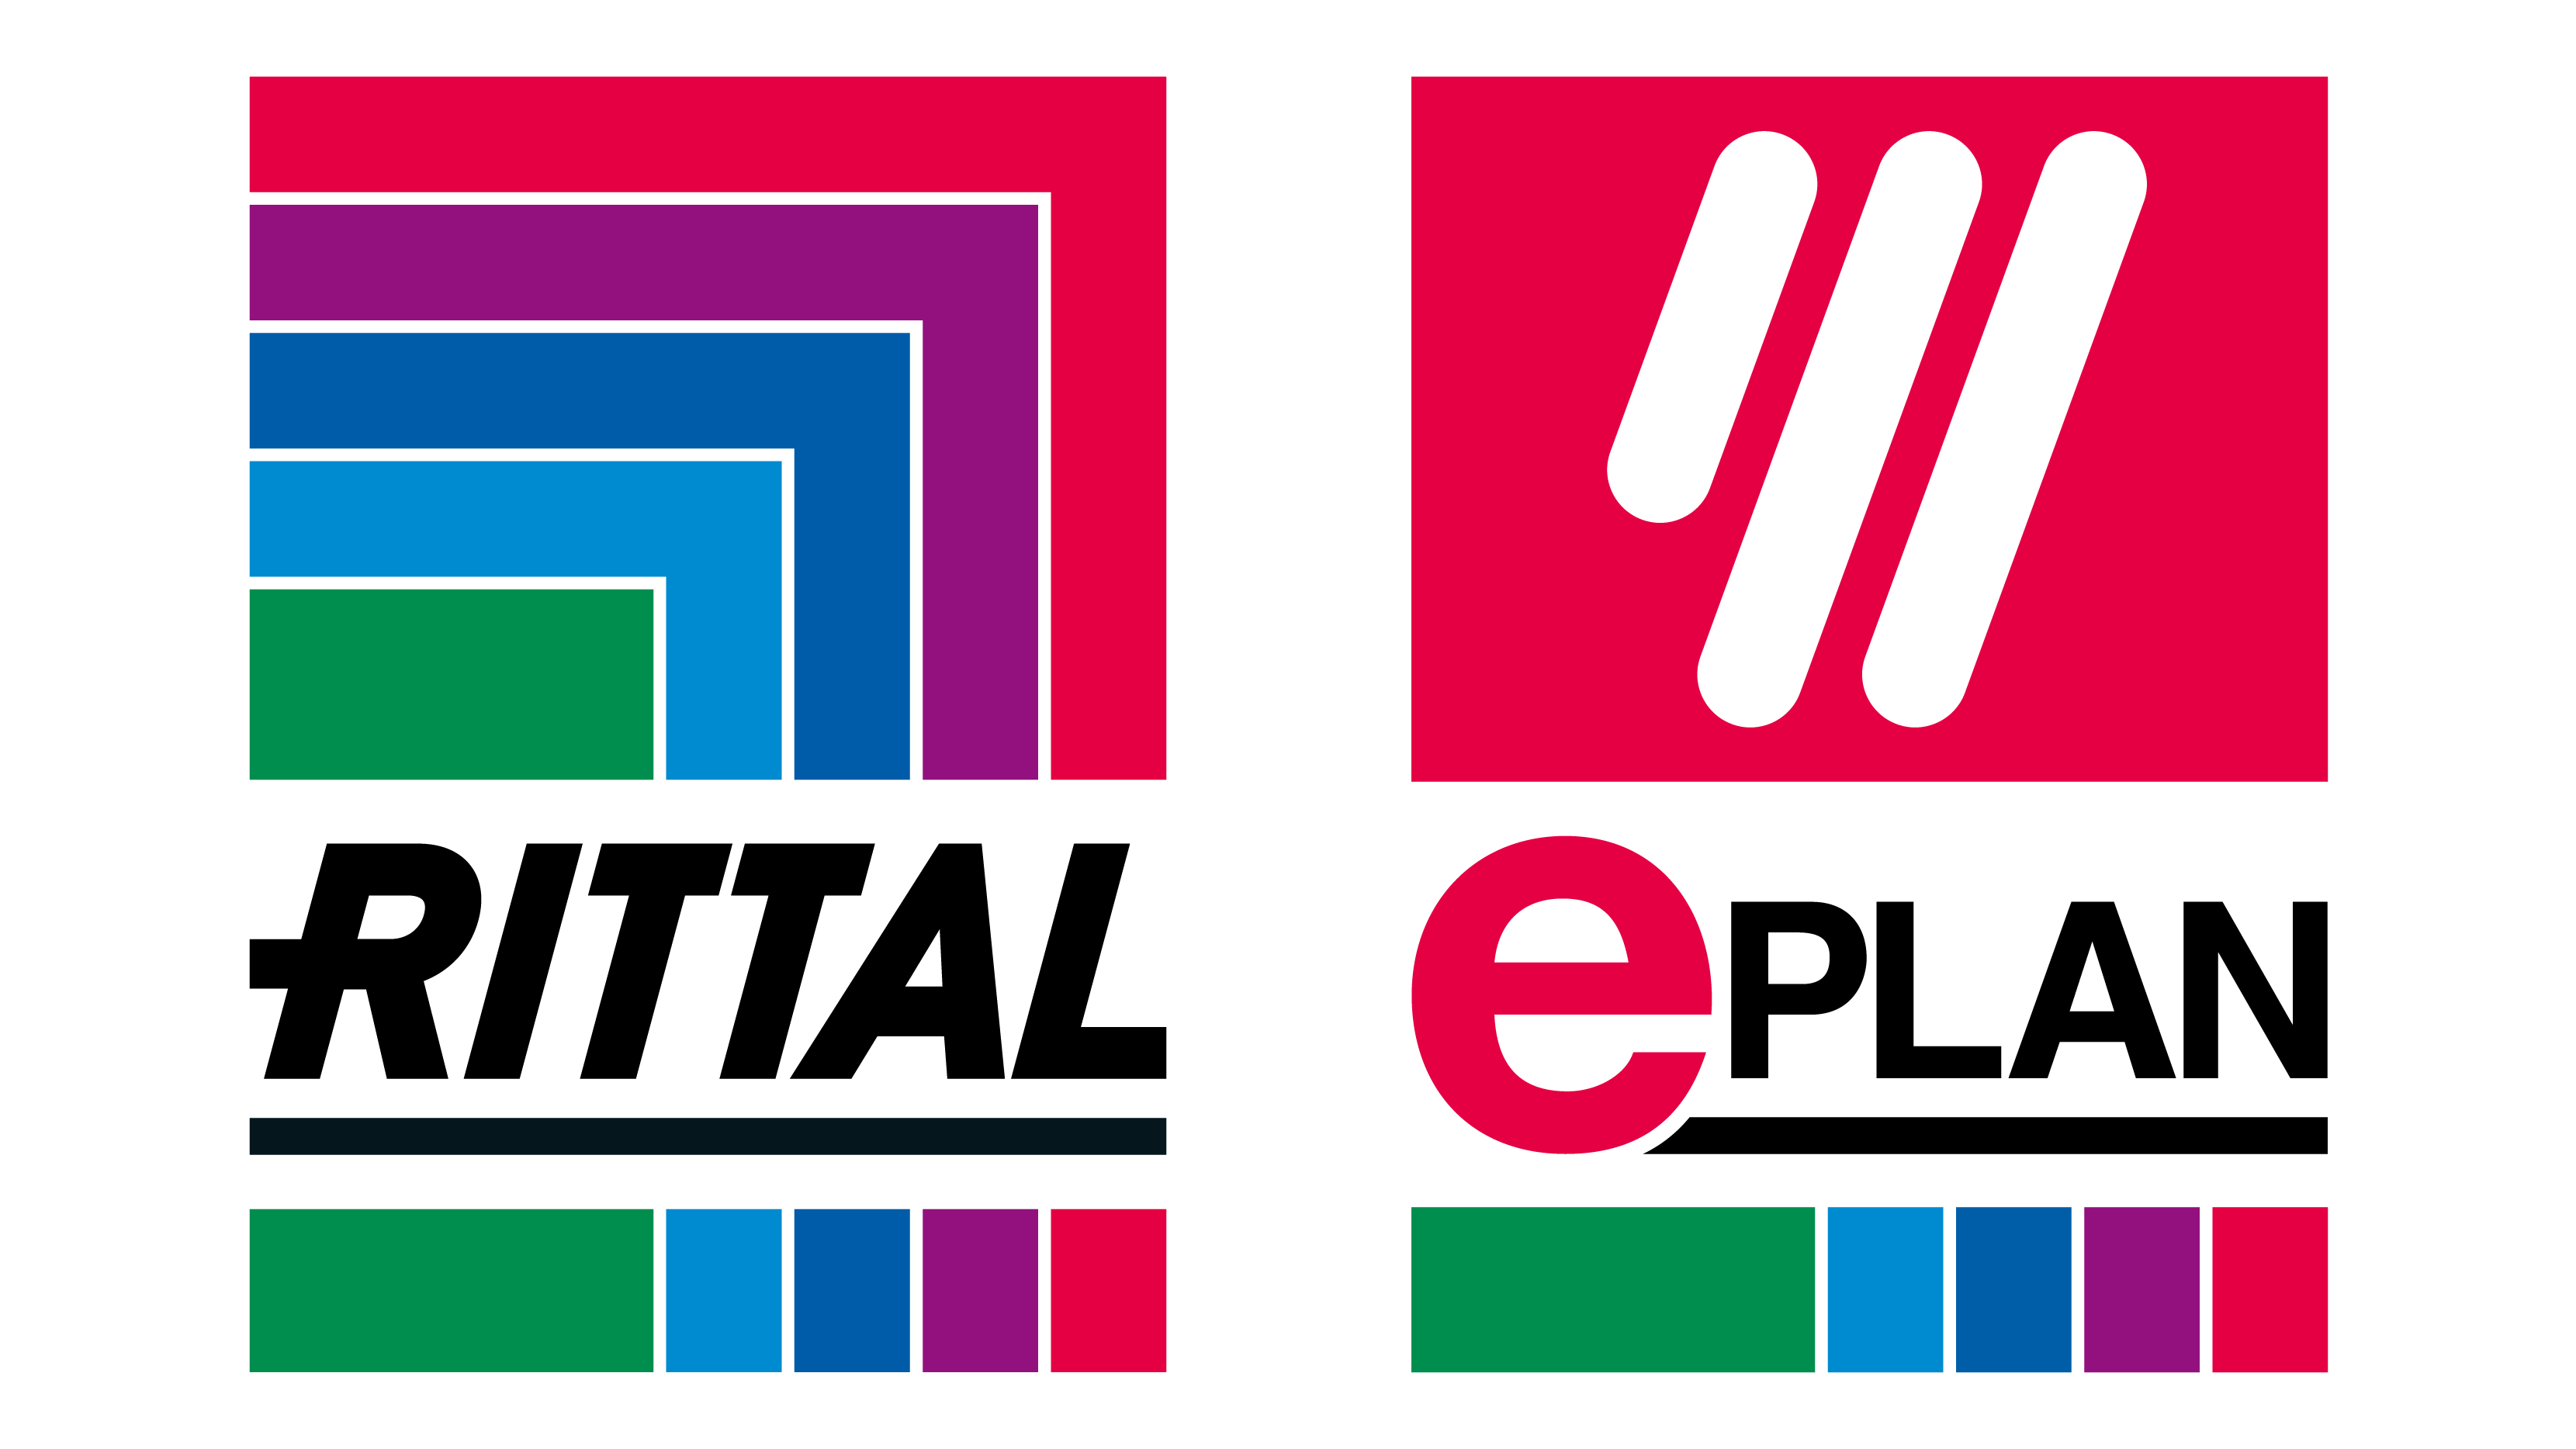 Rittal Eplan logo